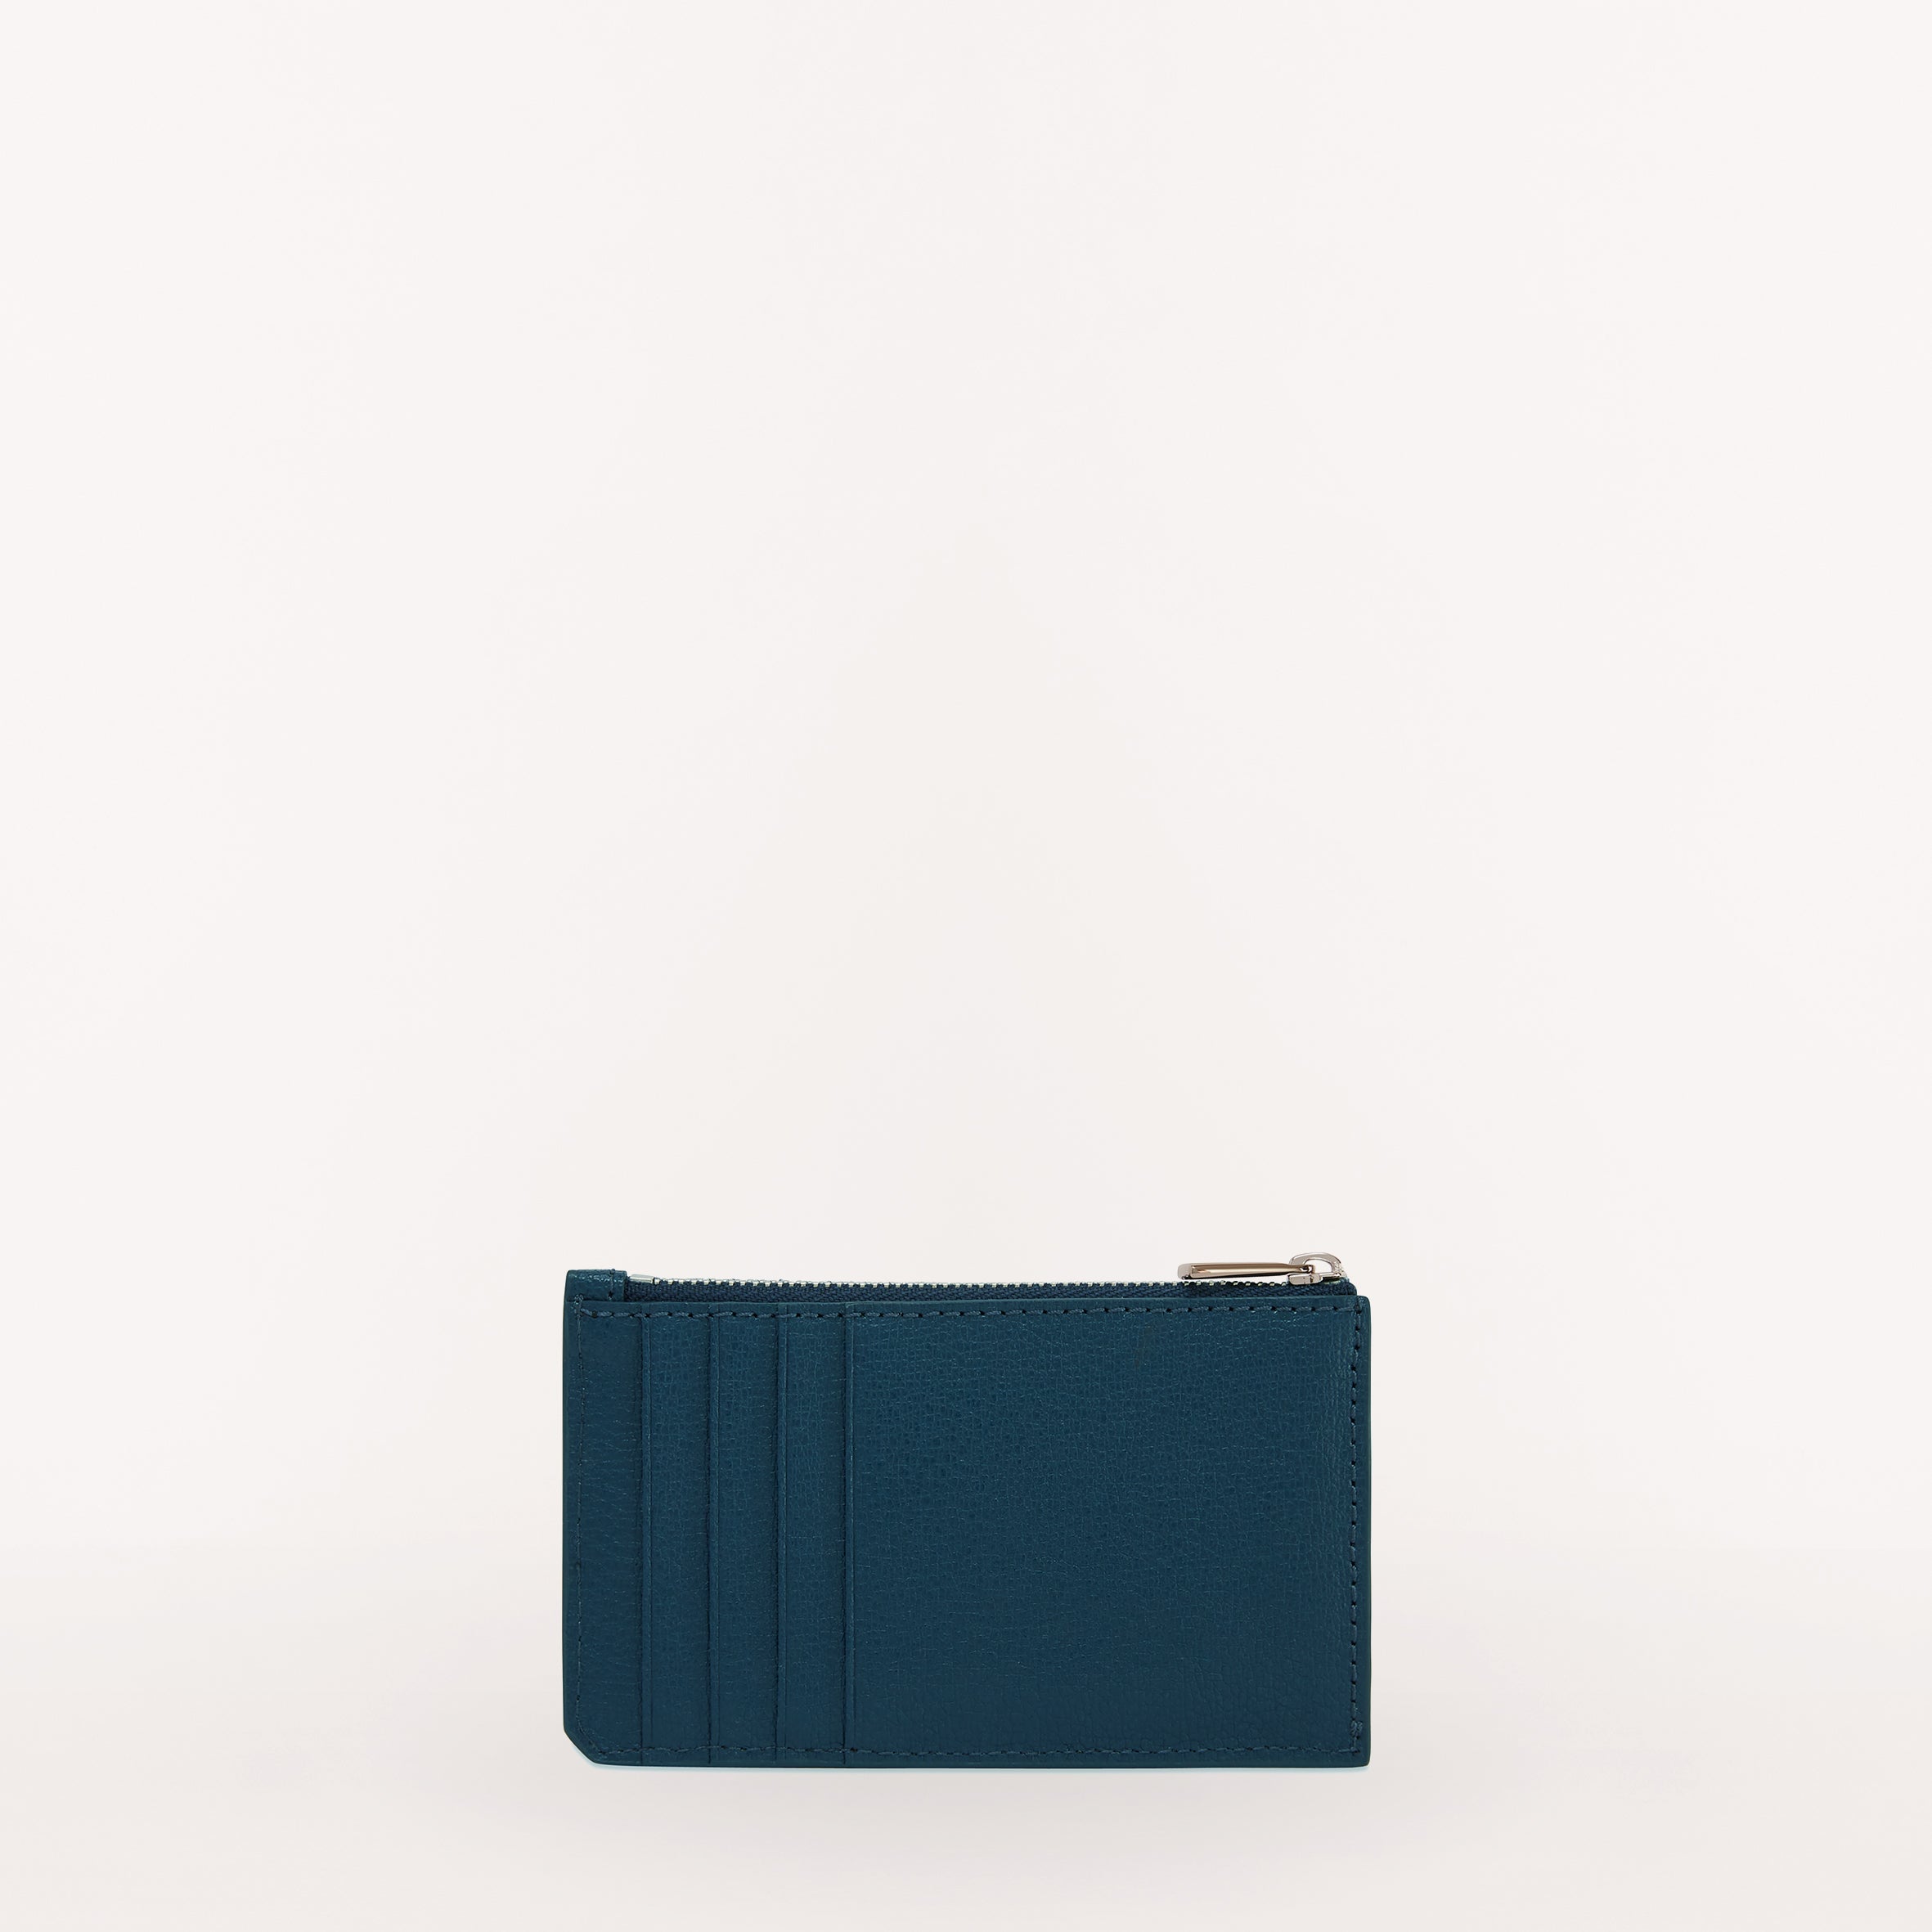 Shop latest trending Furla Blu Jay color Card Case & Card Holder